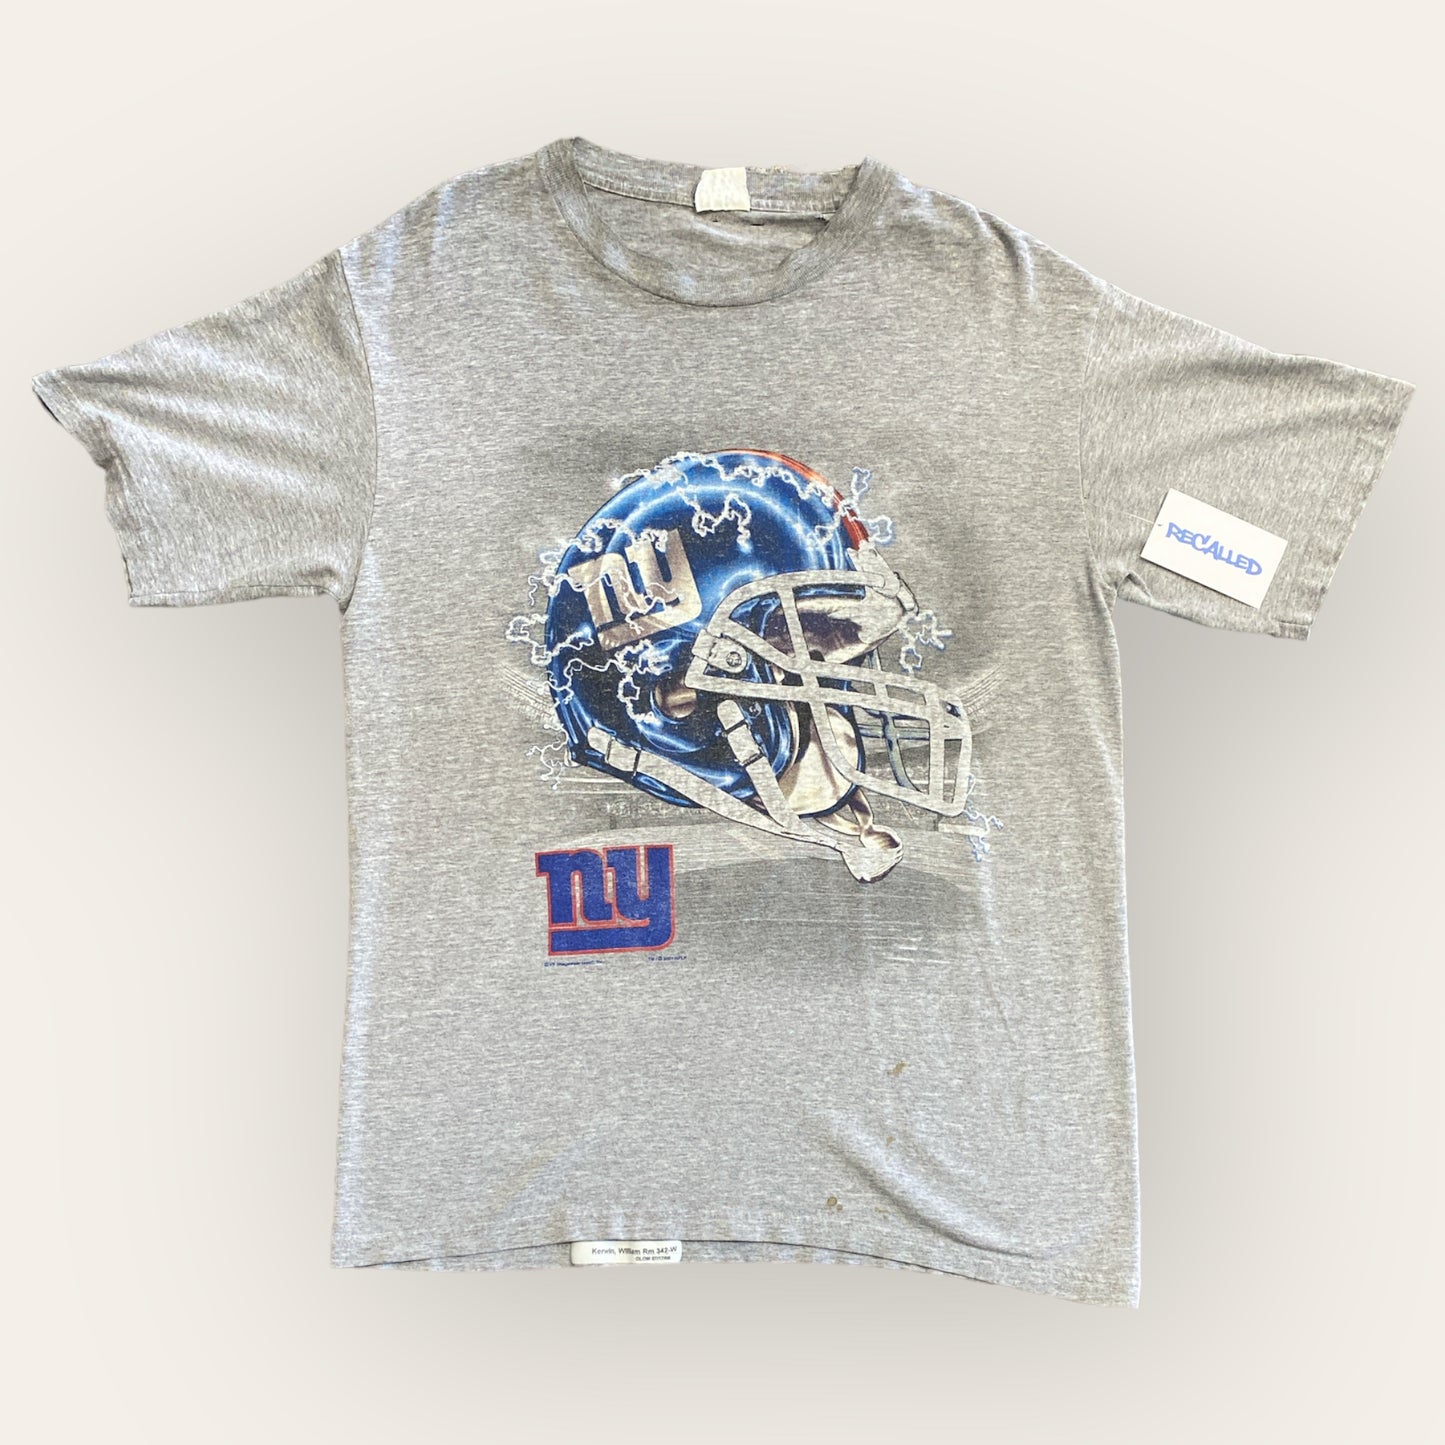 2001 NY Giants Tee Size L